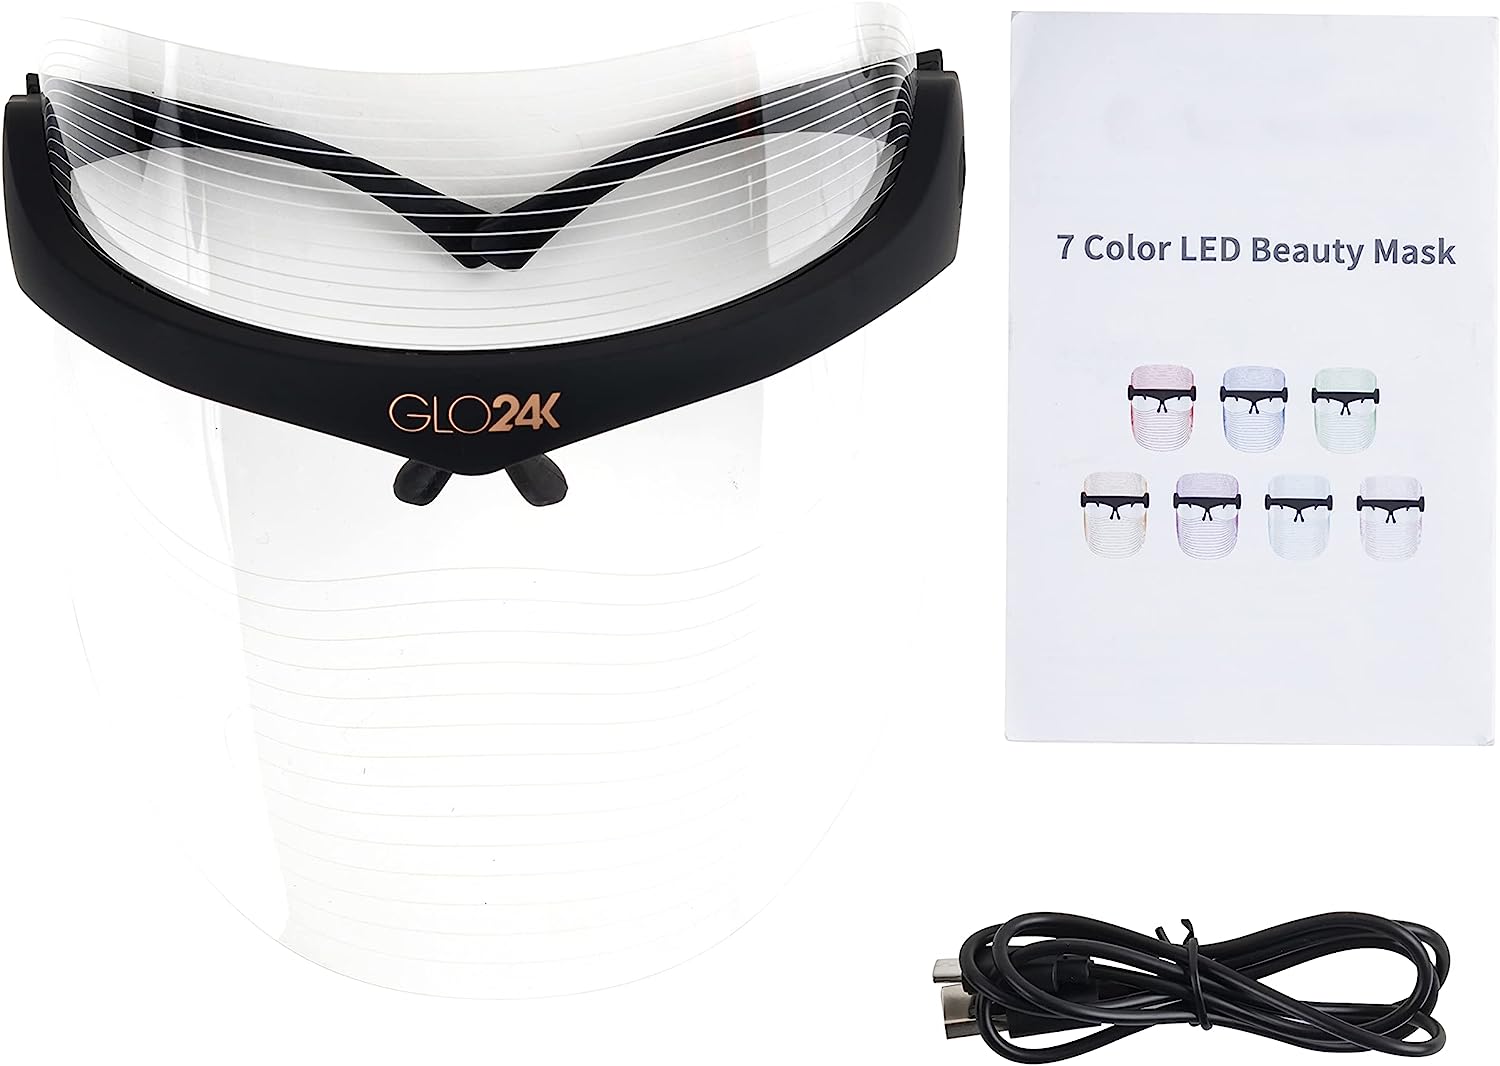 ماسک زیبایی مدل GLO24K 7 Color LED BD3 - ارسال الی 10 الی 15 روز کاری